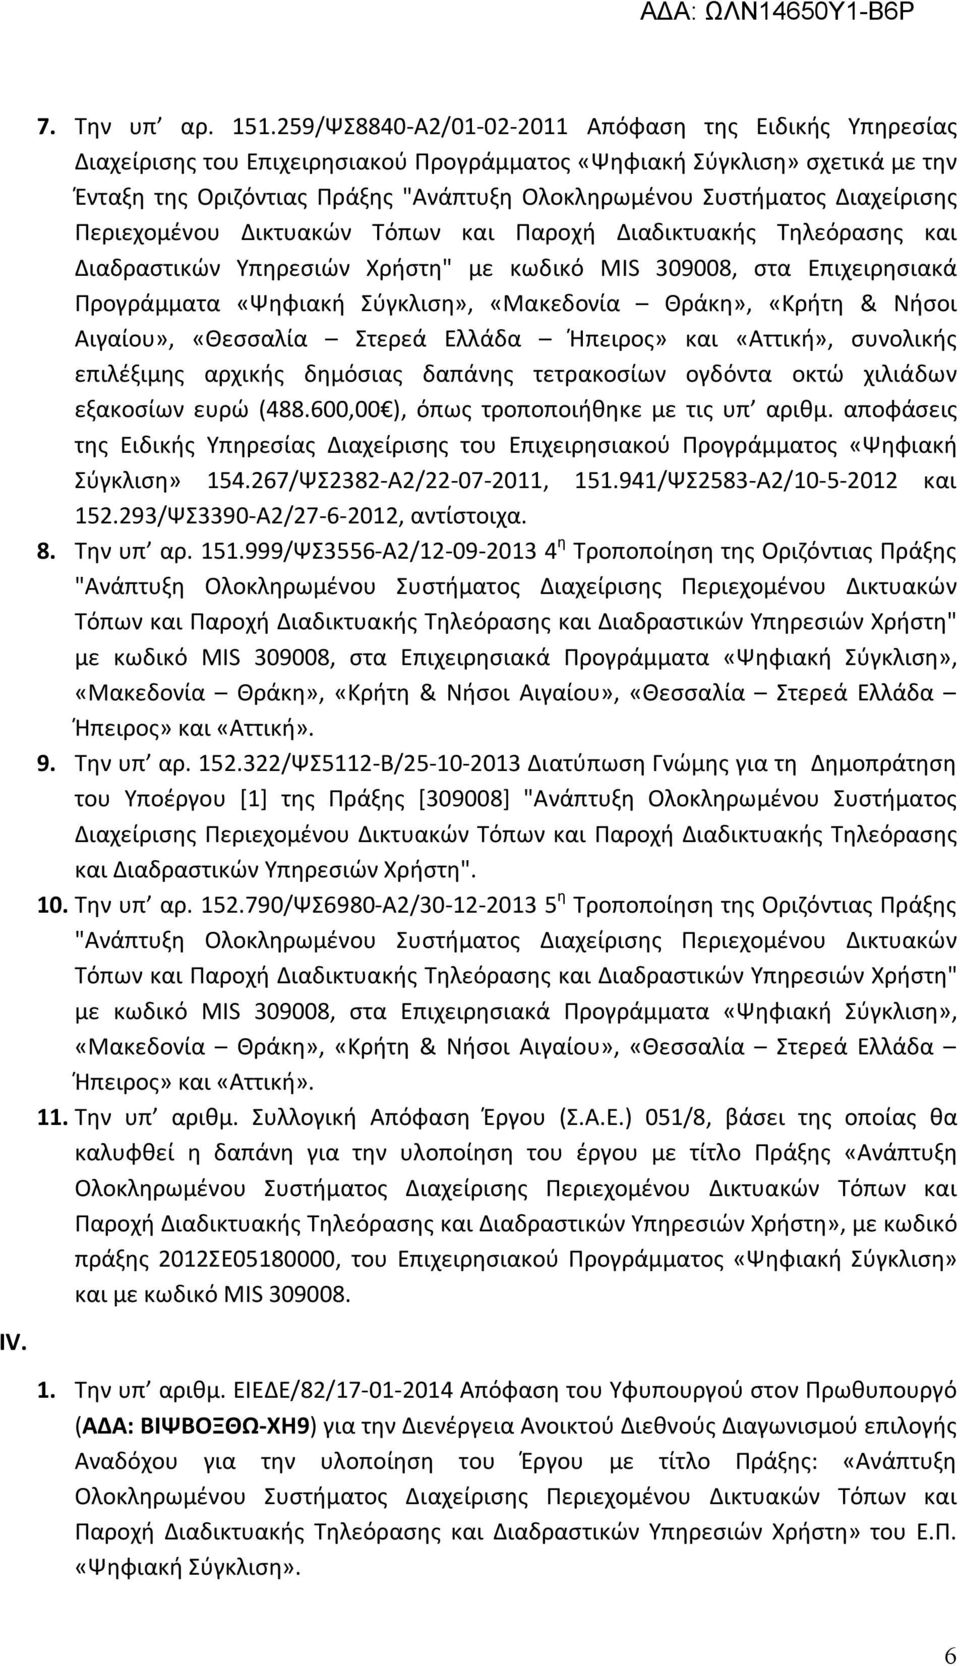 Διαχείρισης Περιεχομένου Δικτυακών Τόπων και Παροχή Διαδικτυακής Τηλεόρασης και Διαδραστικών Υπηρεσιών Χρήστη" με κωδικό MIS 309008, στα Επιχειρησιακά Προγράμματα «Ψηφιακή Σύγκλιση», «Μακεδονία